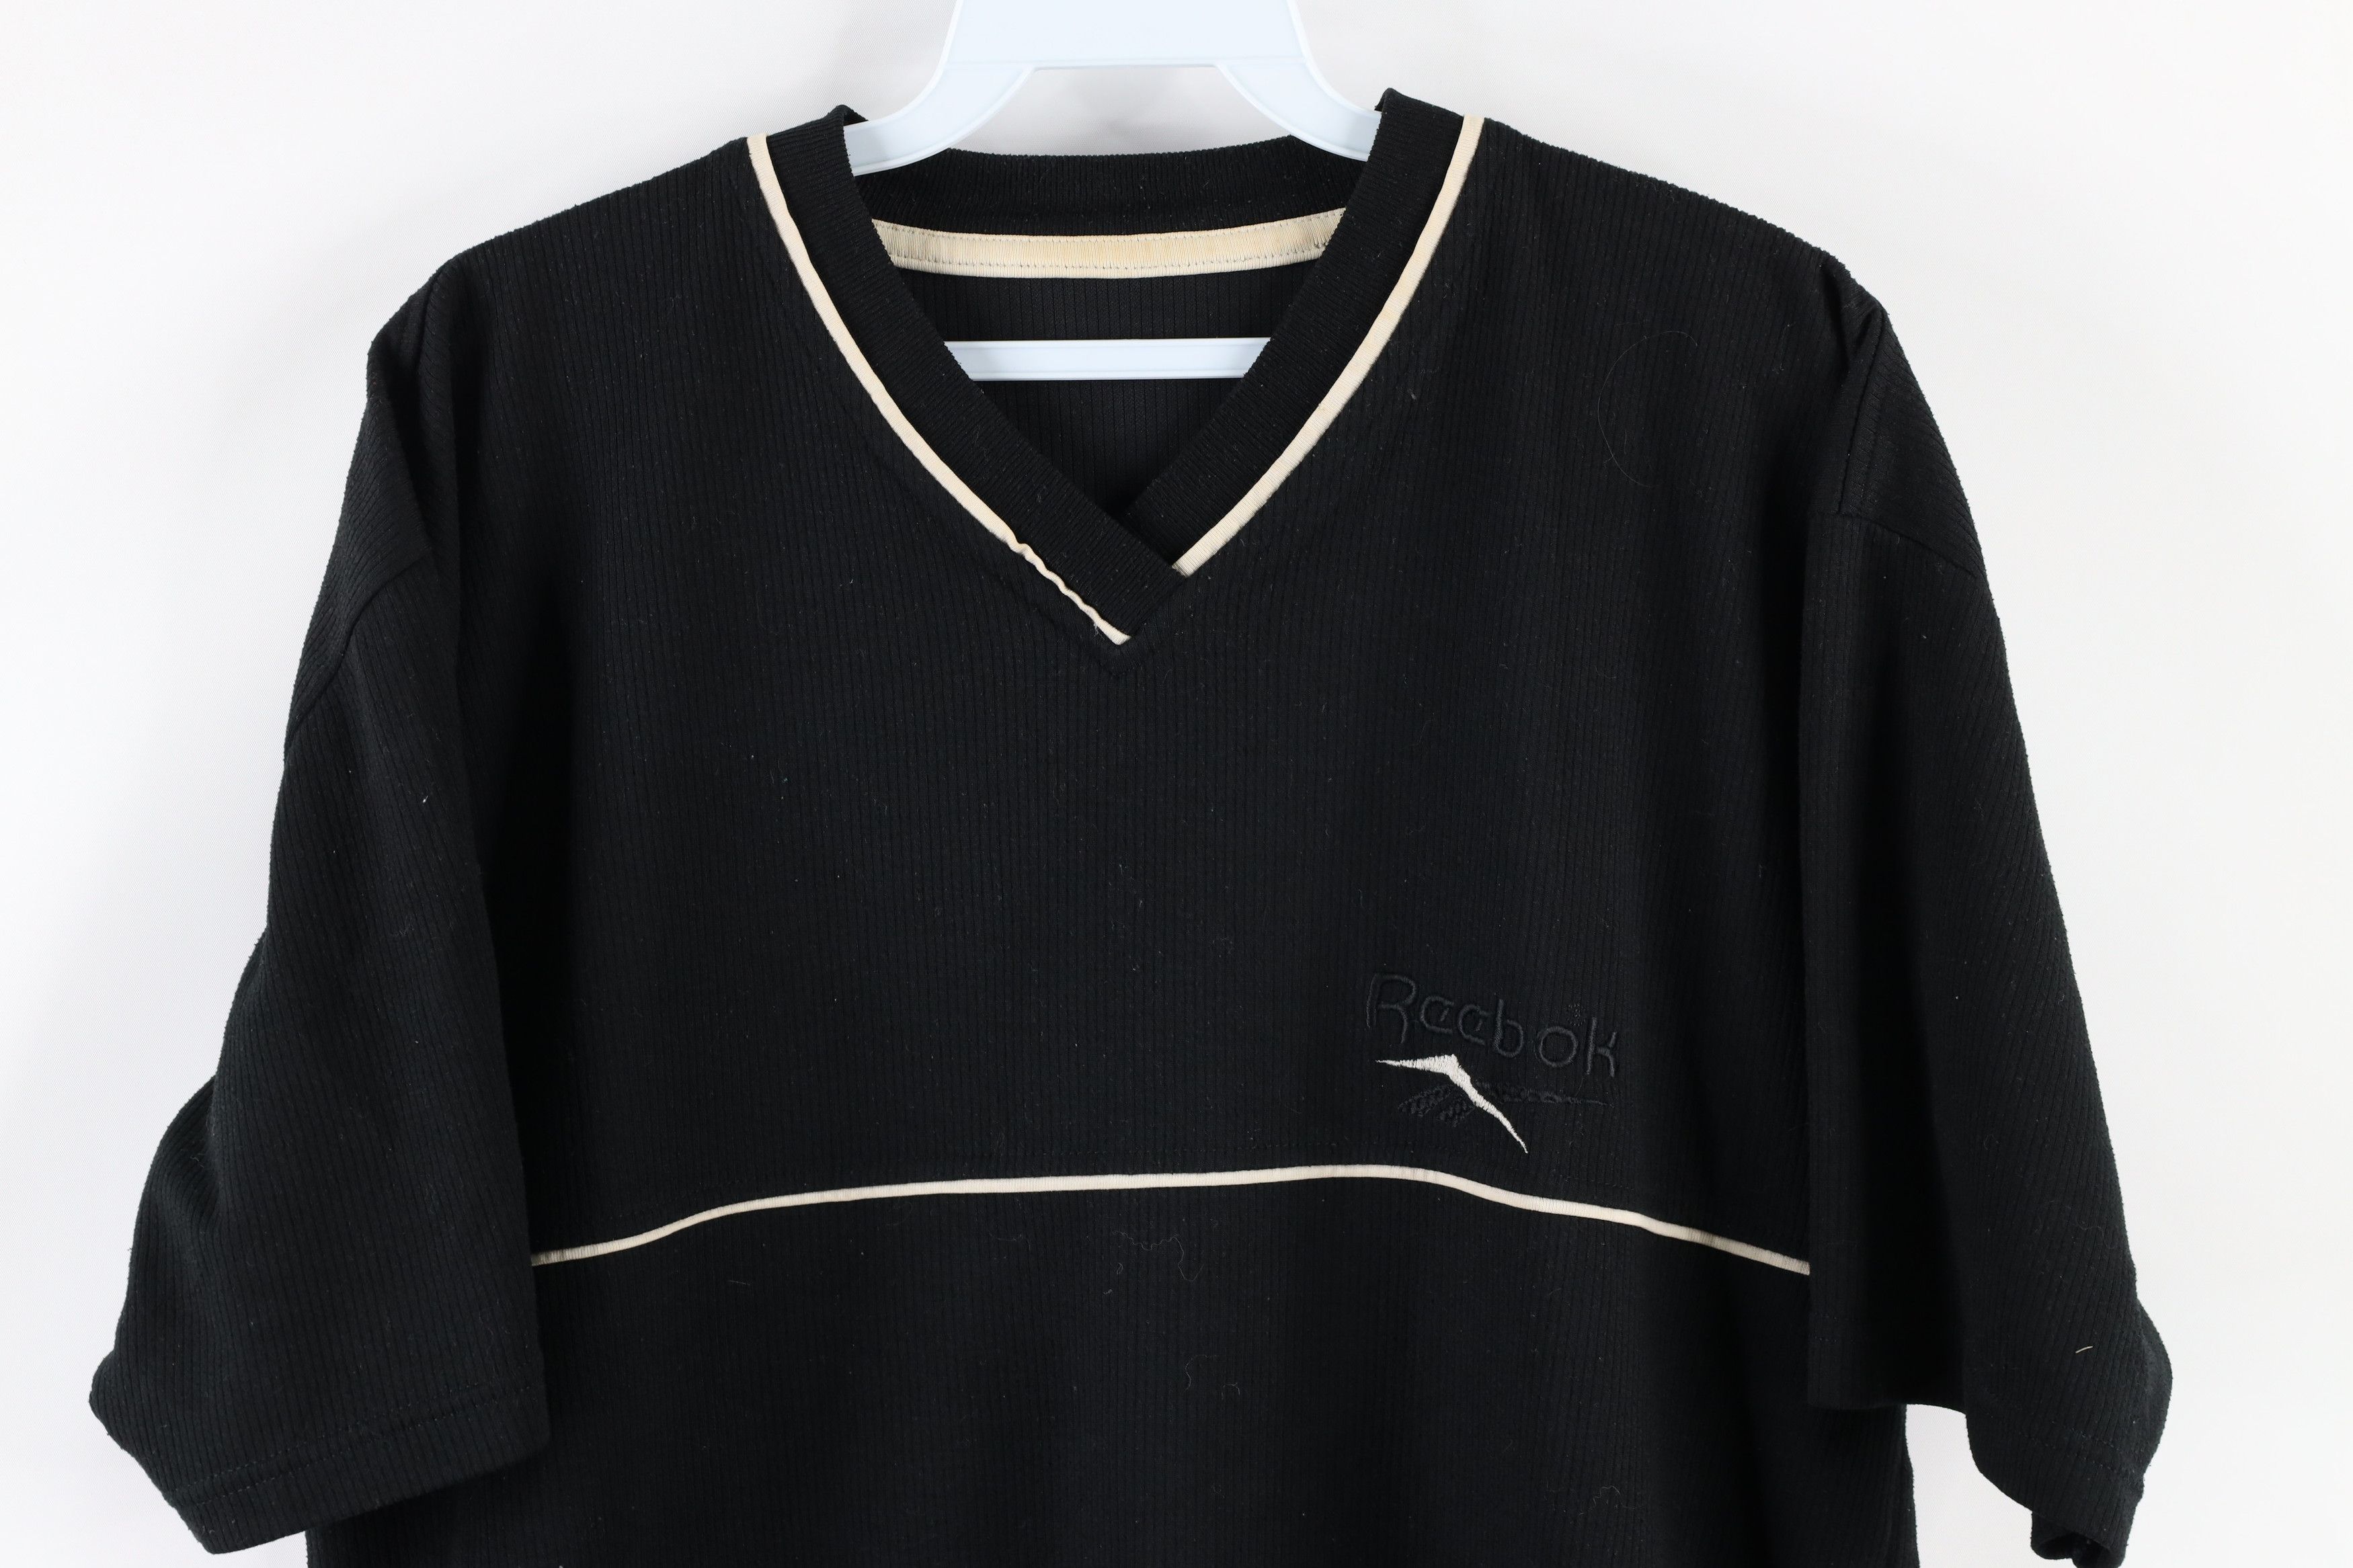 Vintage Vintage 90s Reebok Ribbed Spell Out V-Neck T-Shirt Black Size US L / EU 52-54 / 3 - 2 Preview